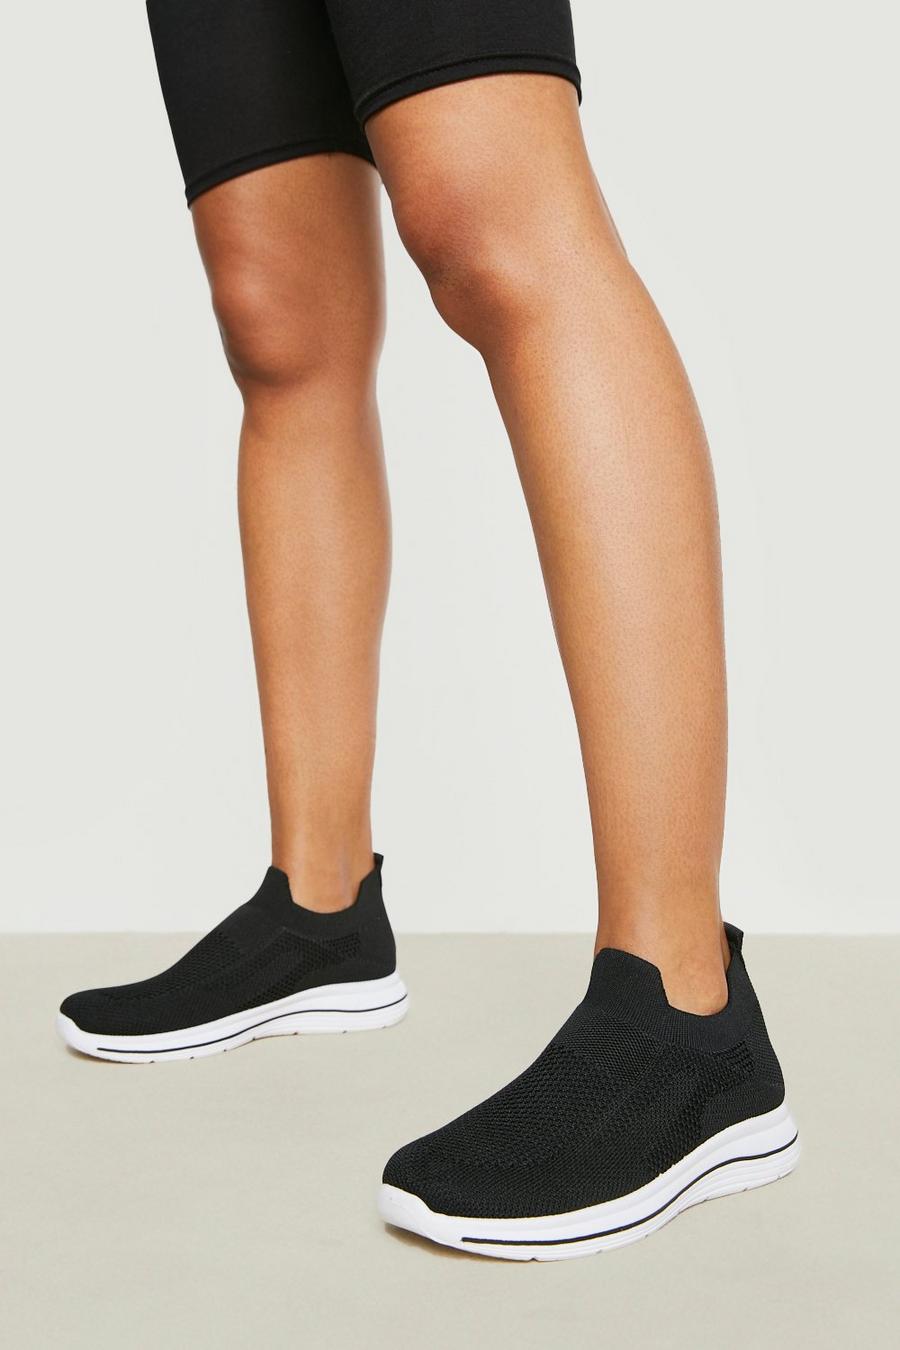 Zapatillas calcetín deportivas de holgura ancha con raya en la suela, Black negro